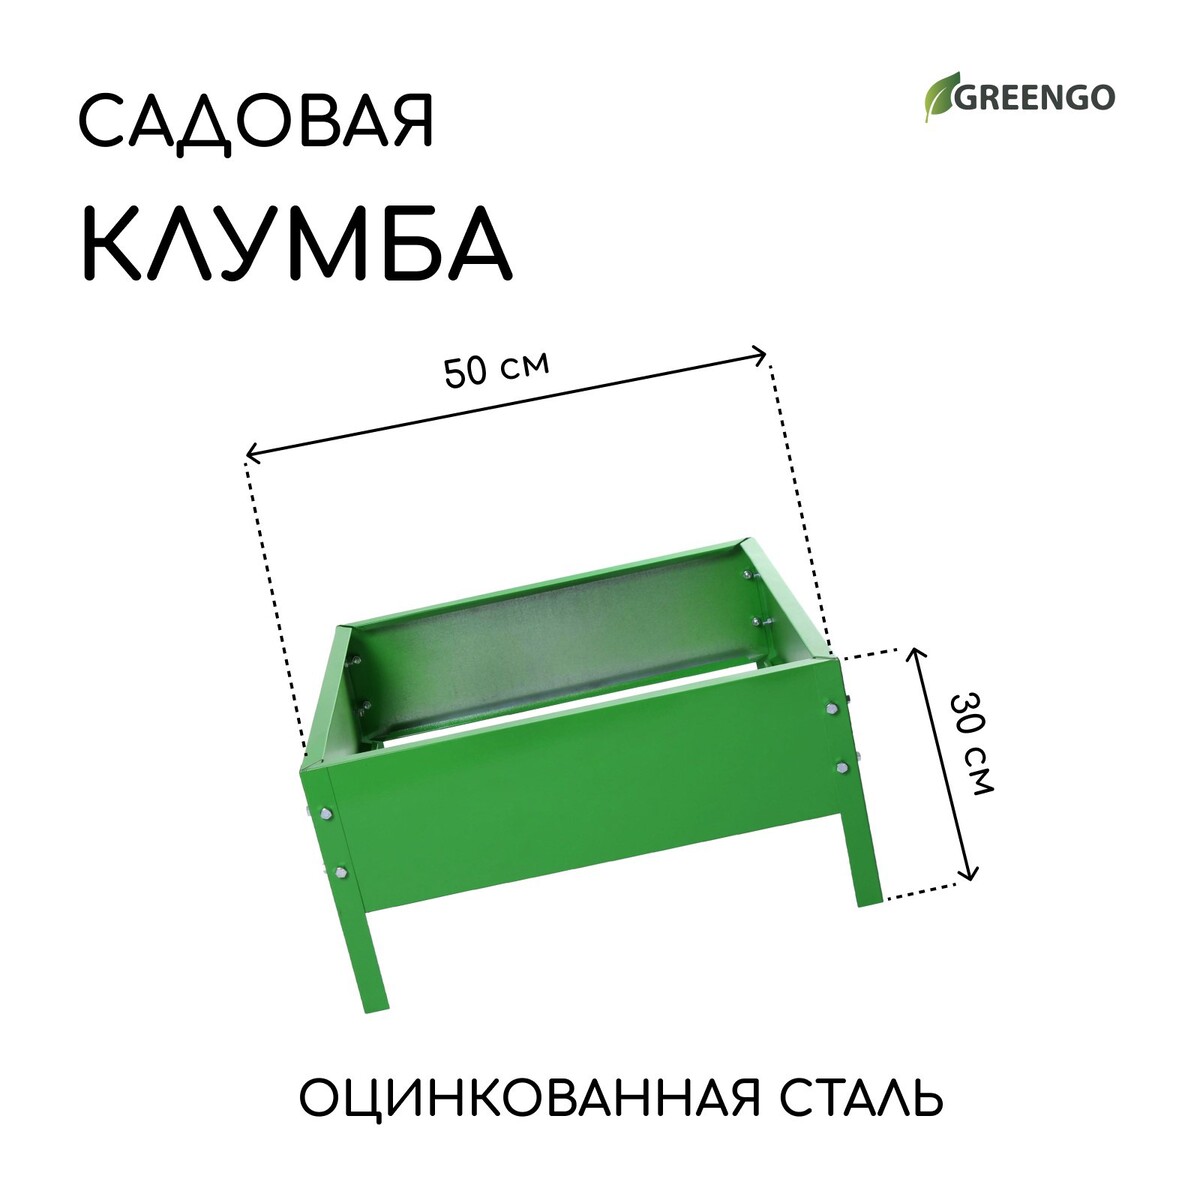 Клумба оцинкованная, 50 × 50 × 15 см, ярко-зеленая, greengo клумба оцинкованная 50 × 15 см ярко зеленая